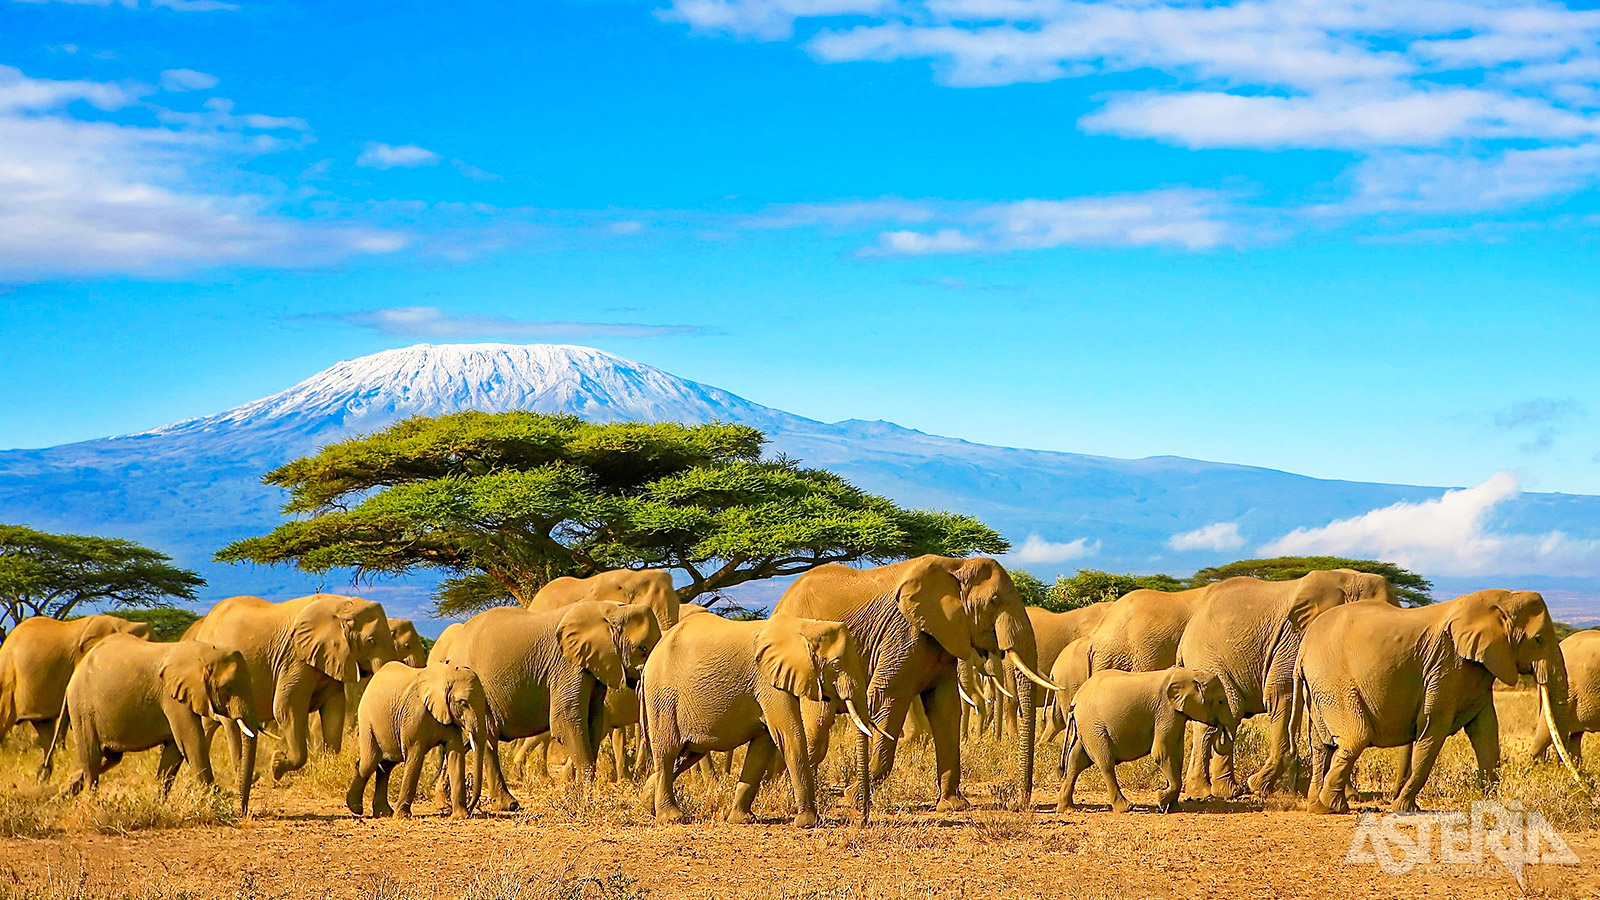 De majestueuze Kilimanjaro is met 5.895m de hoogste berg van Afrika